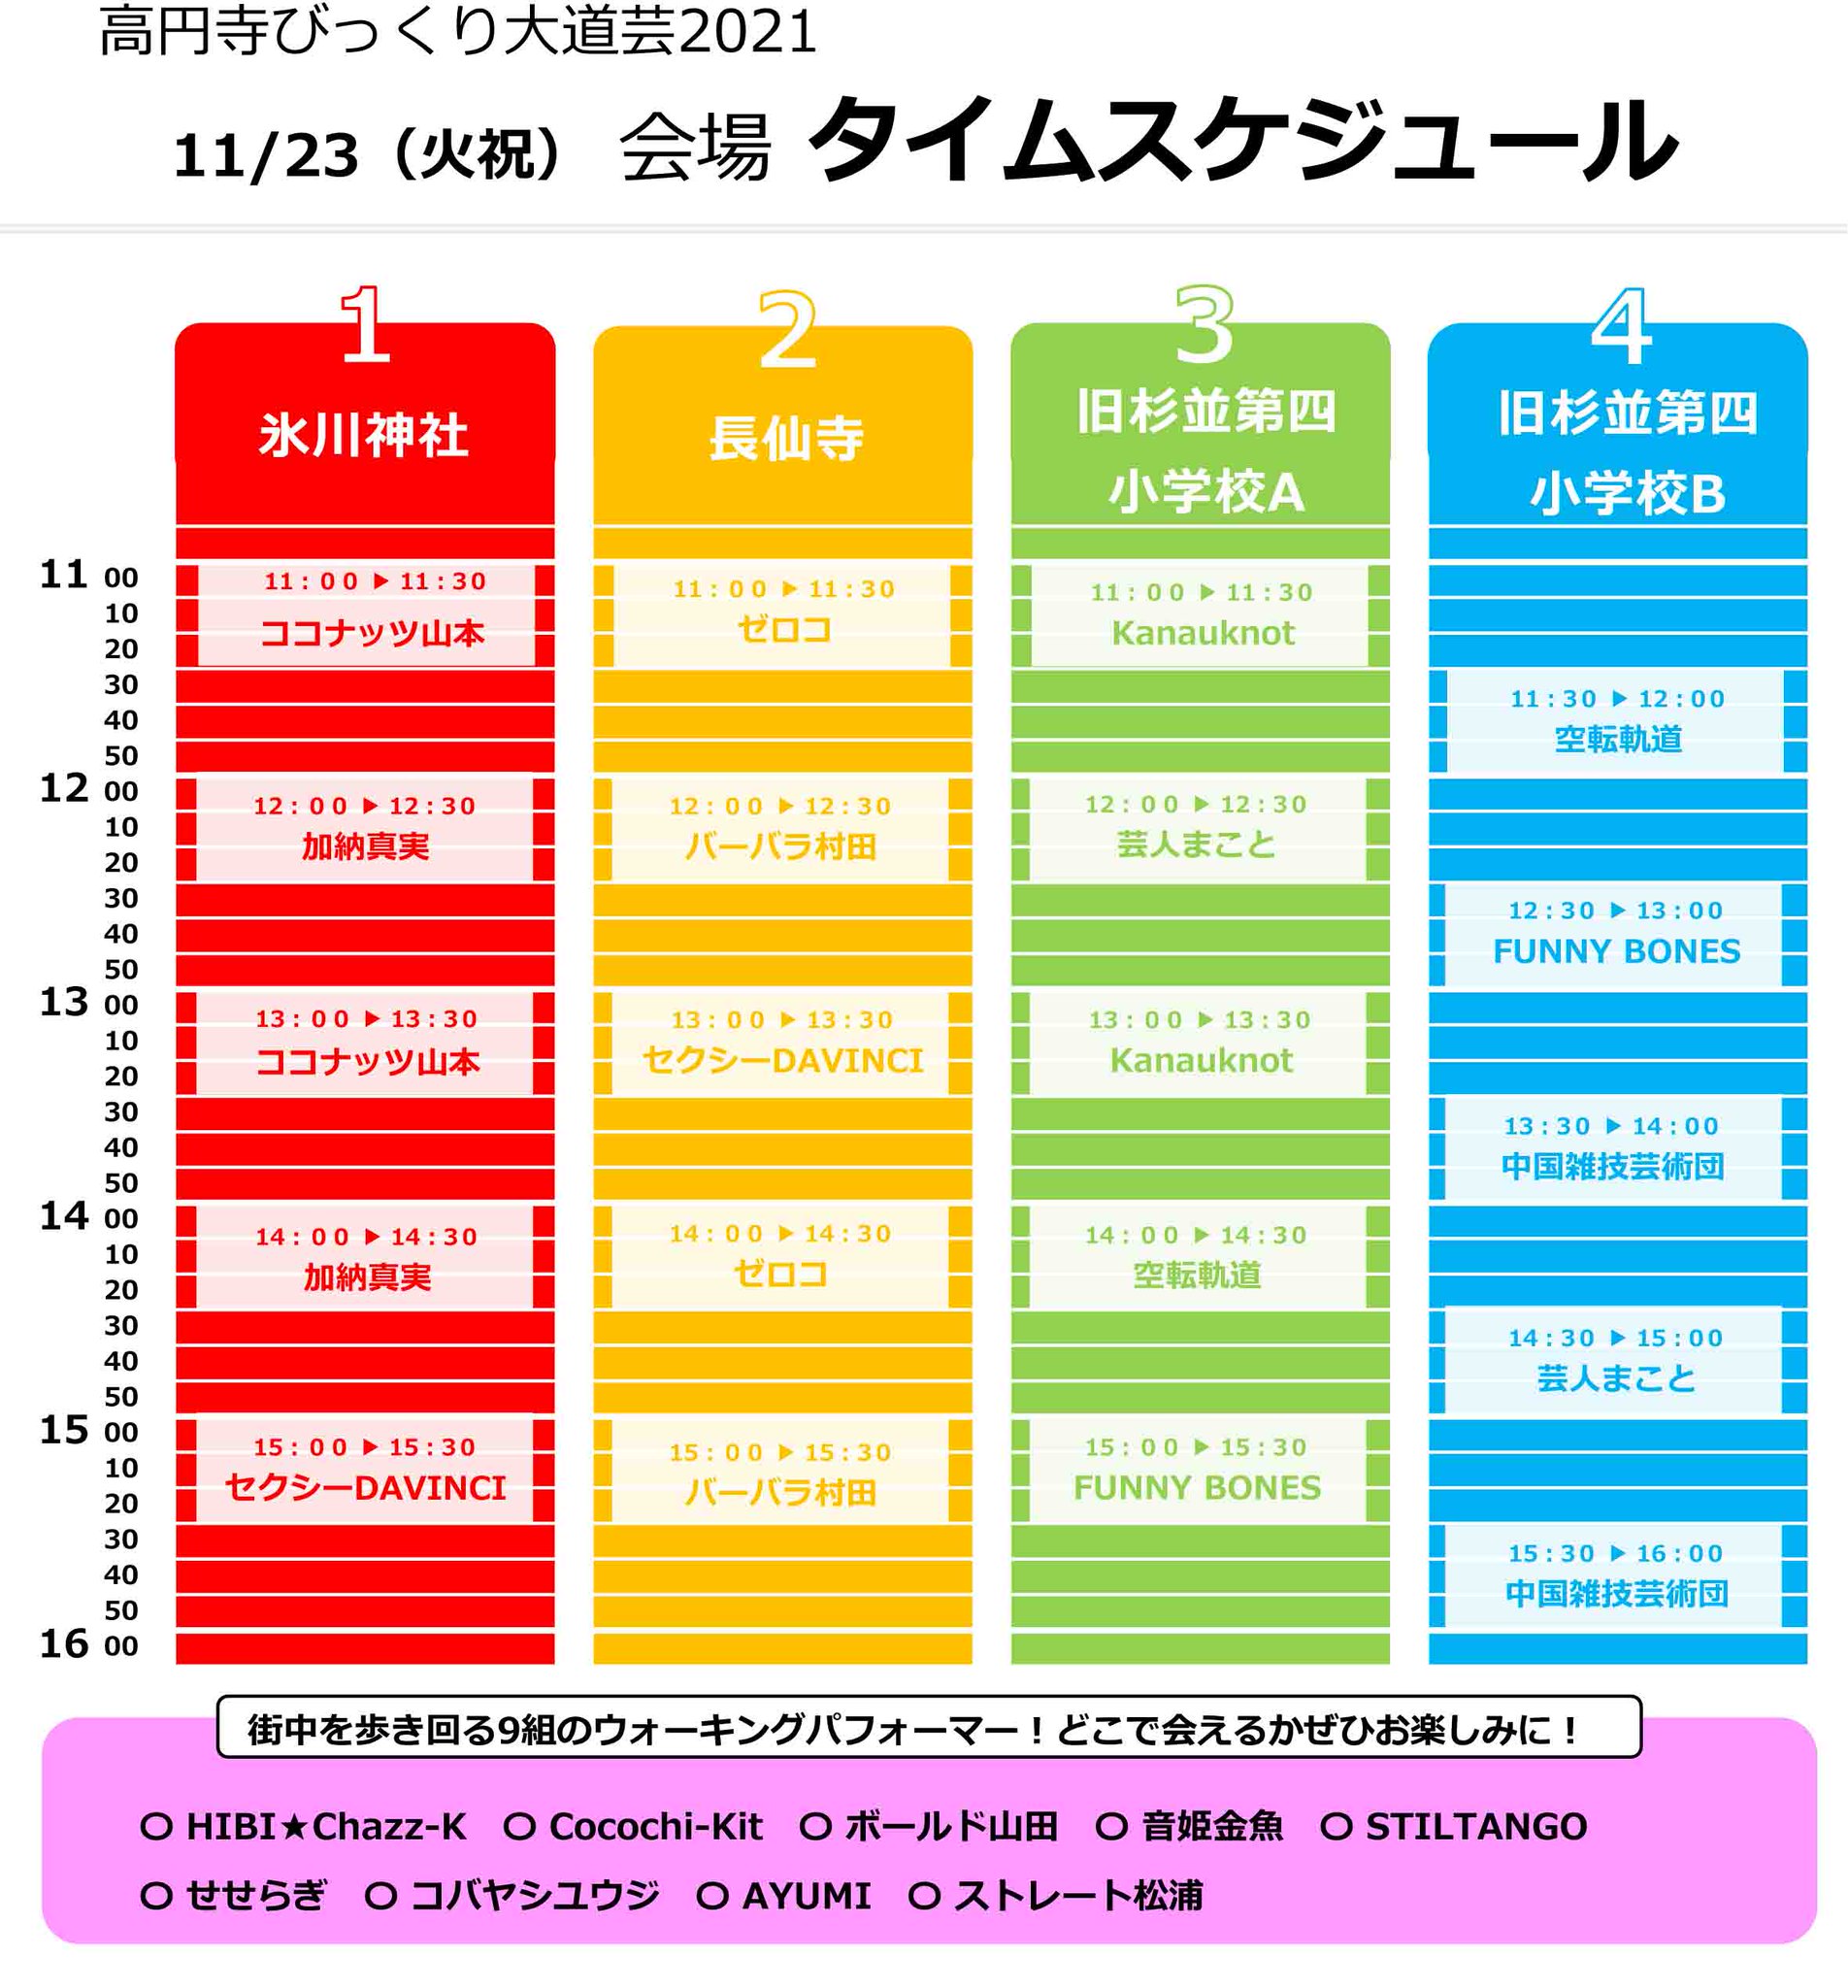 11月23日、高円寺びっくり大道芸2021開催のおしらせ